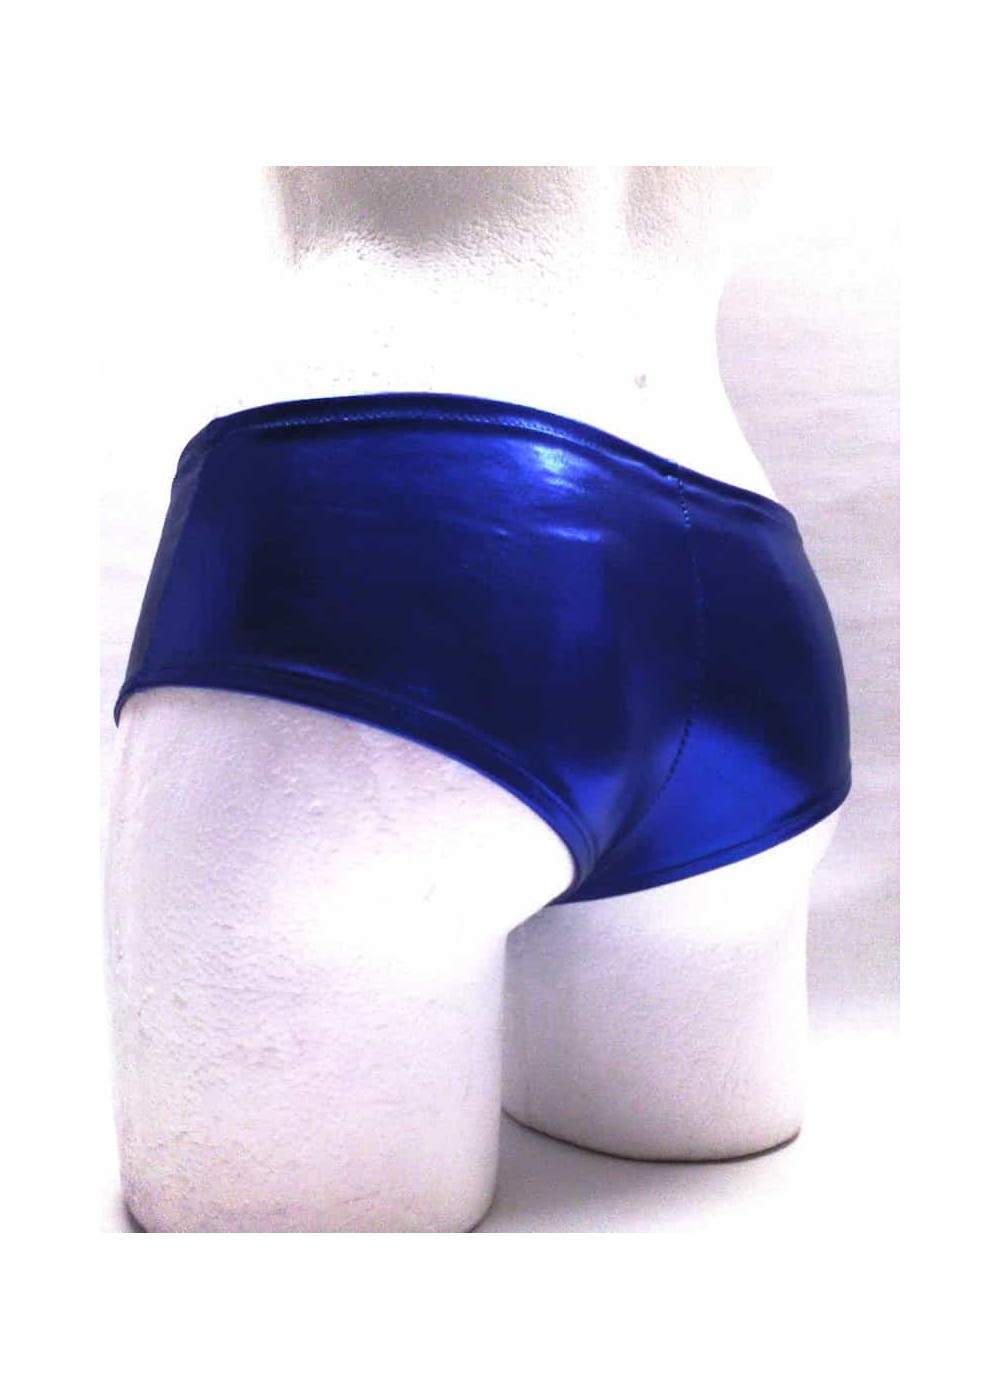 f.girth wetlook GoGo Hotpants blue Metallic 10,00 € - 